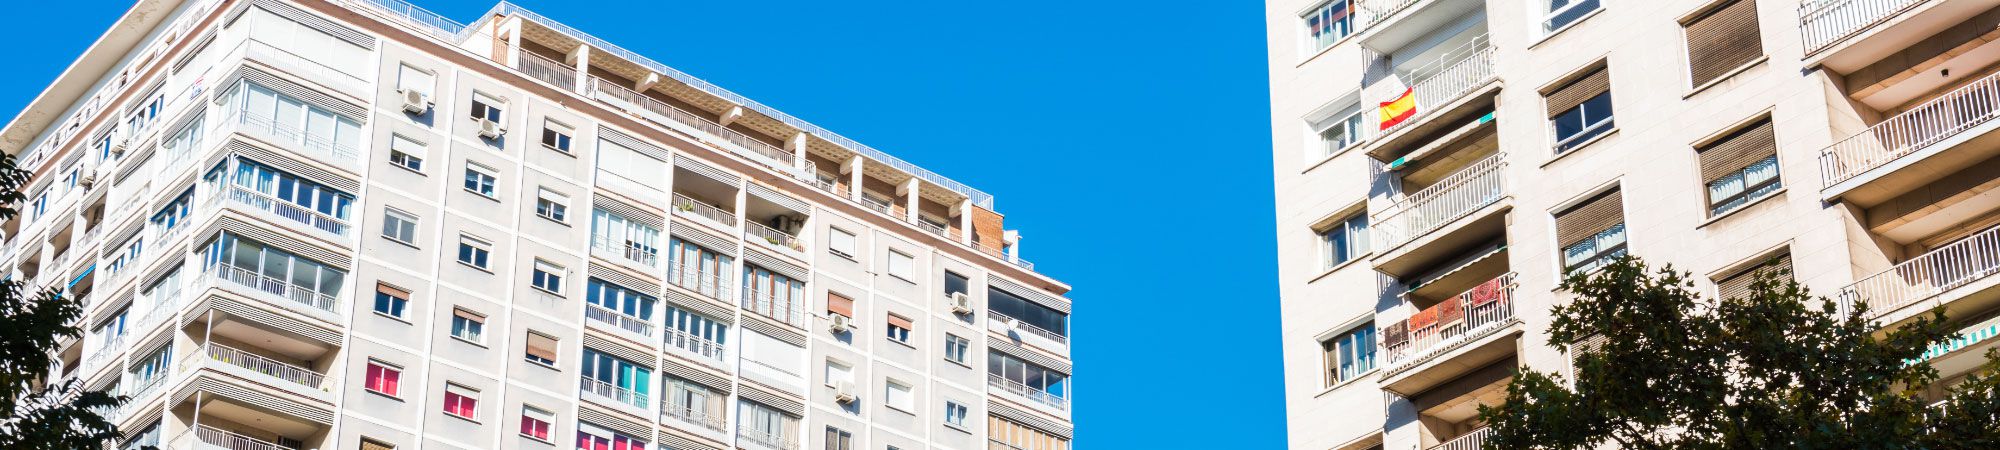 Amplia oferta de pisos, casa y locales  en venta en Almería